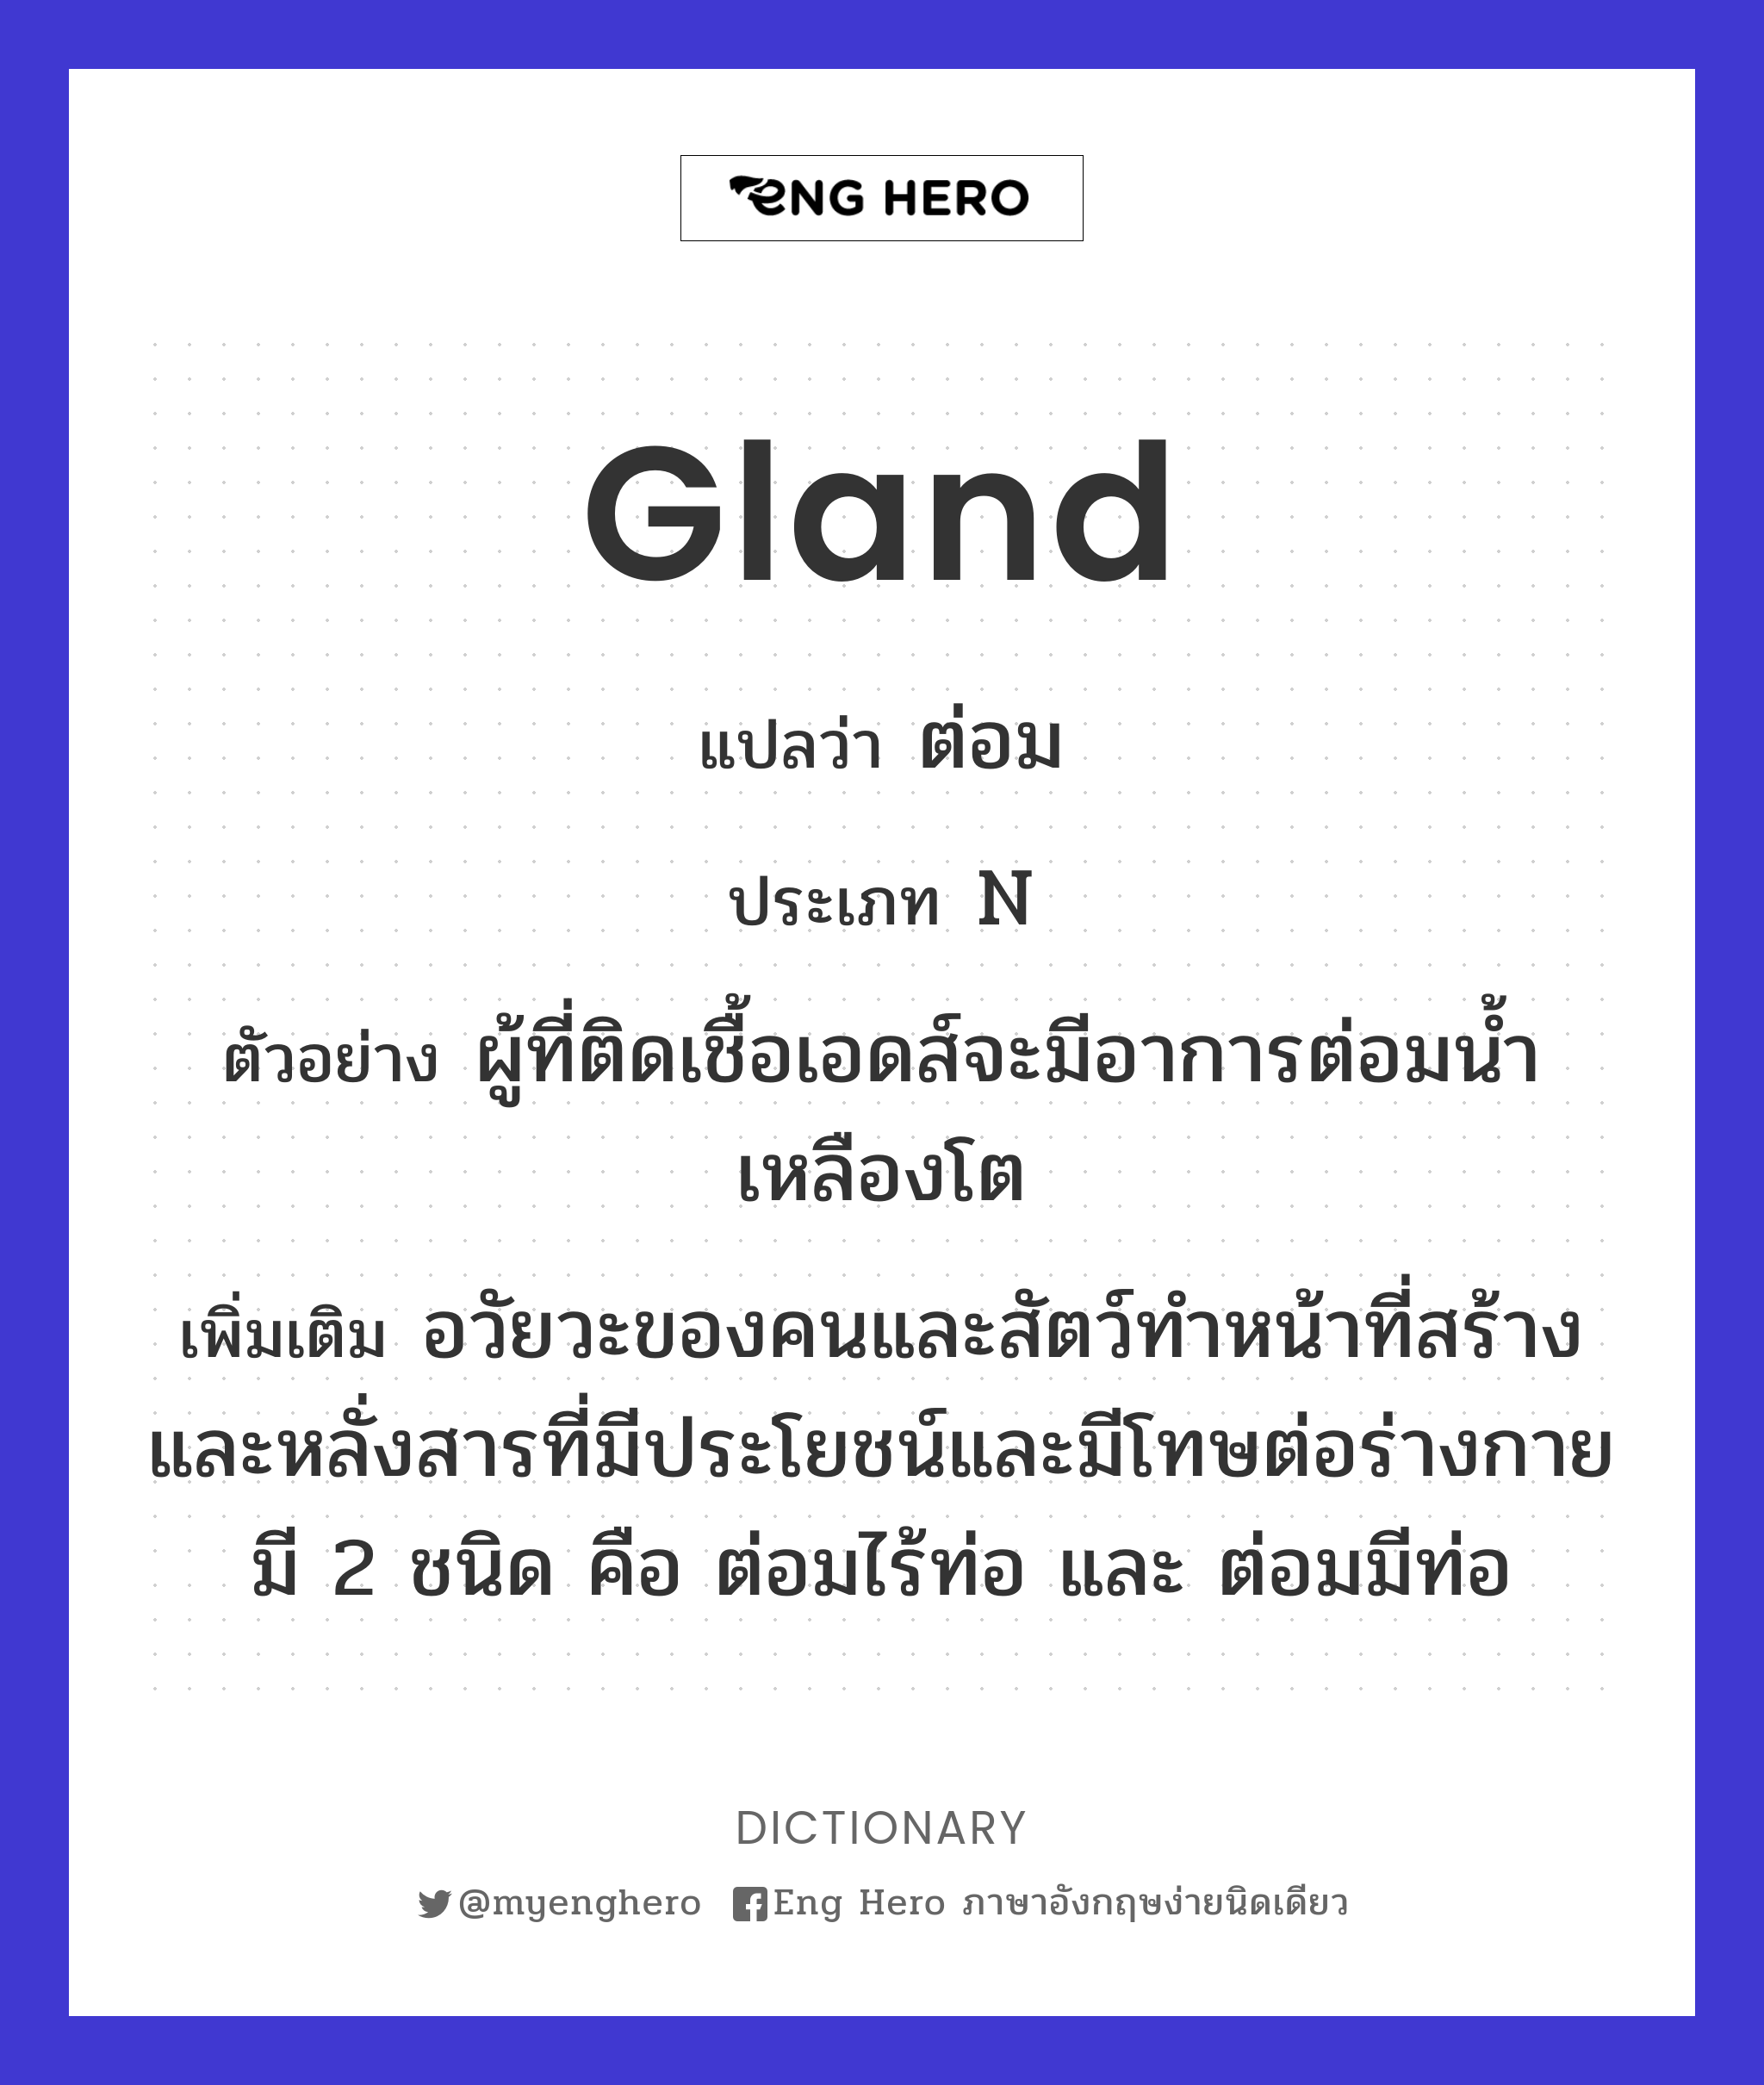 gland